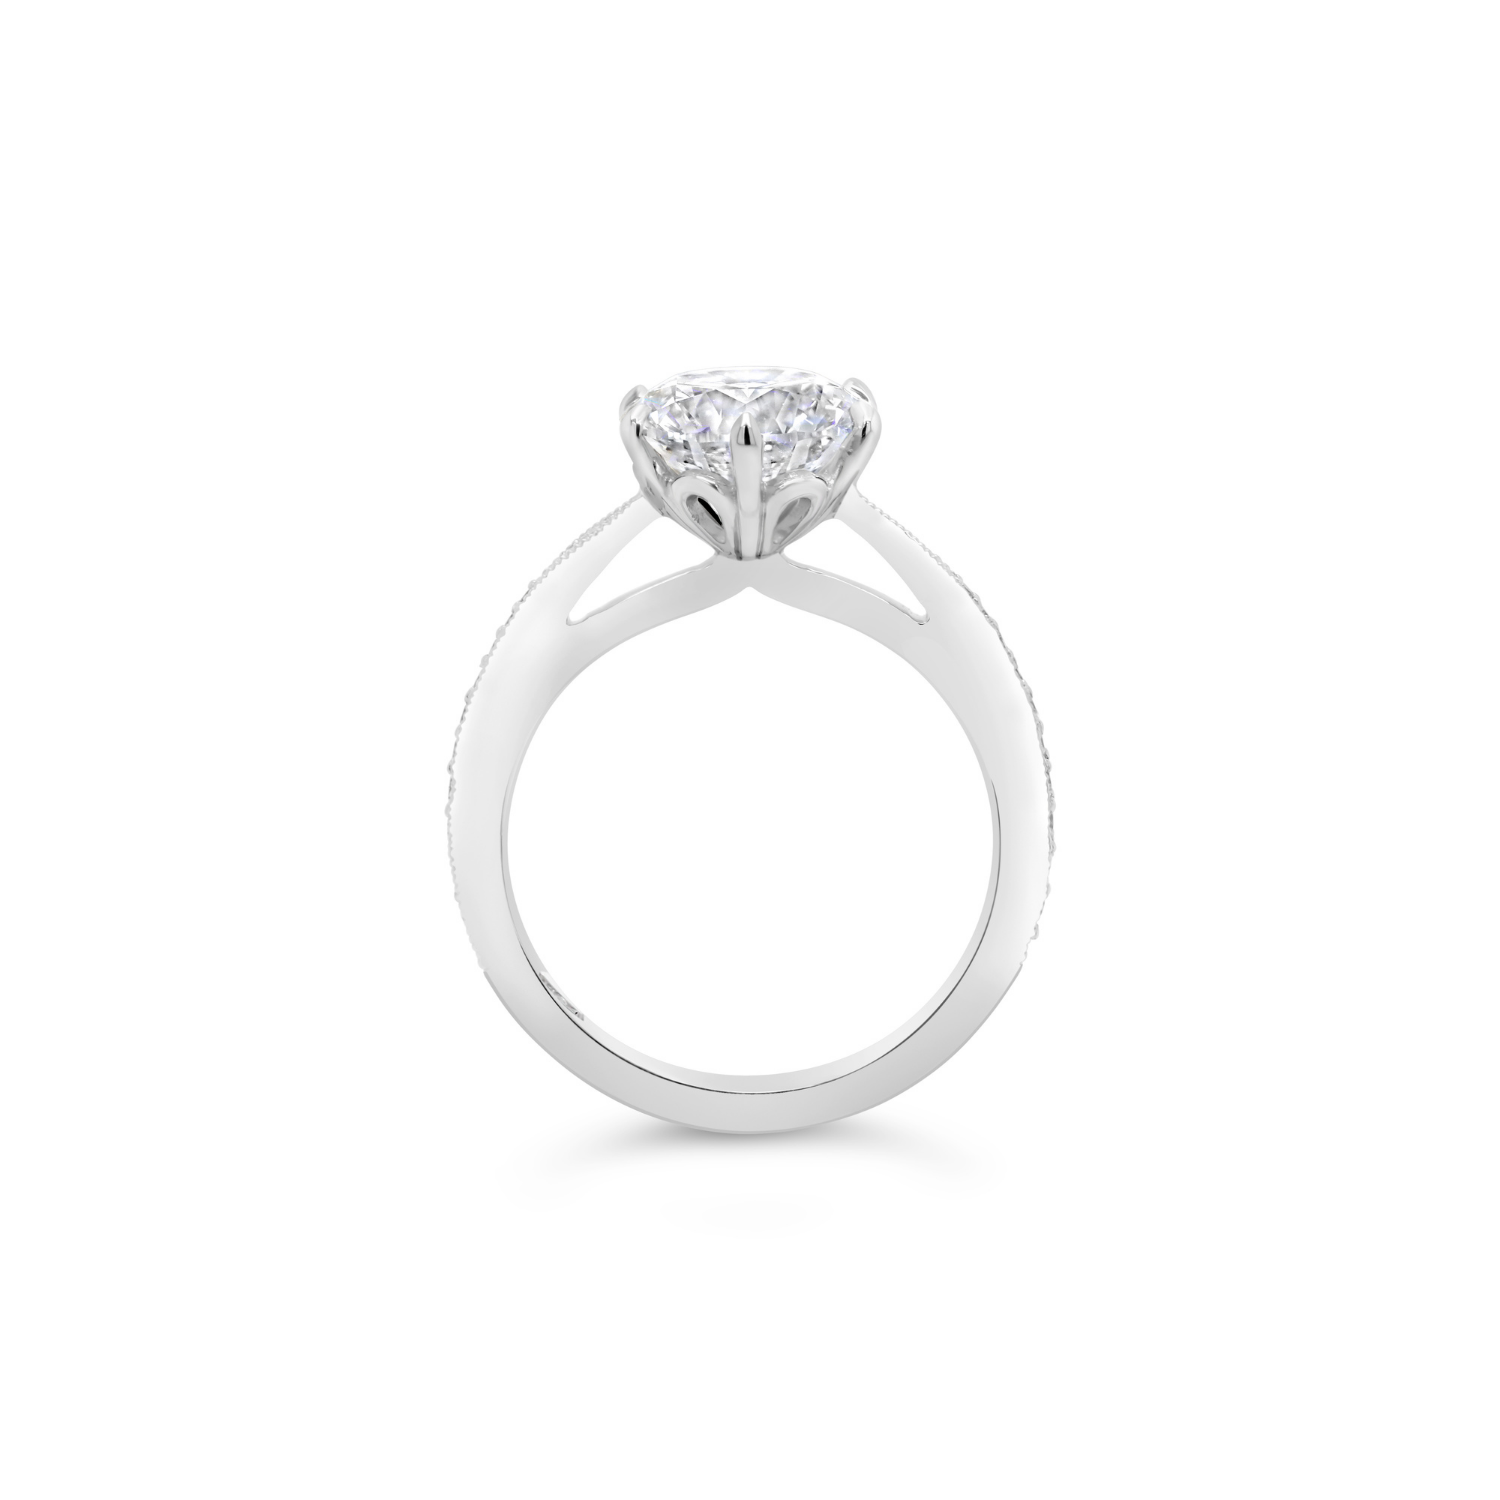 Round Brilliant Cut Solitaire Diamond & Milgrain Engagement Ring